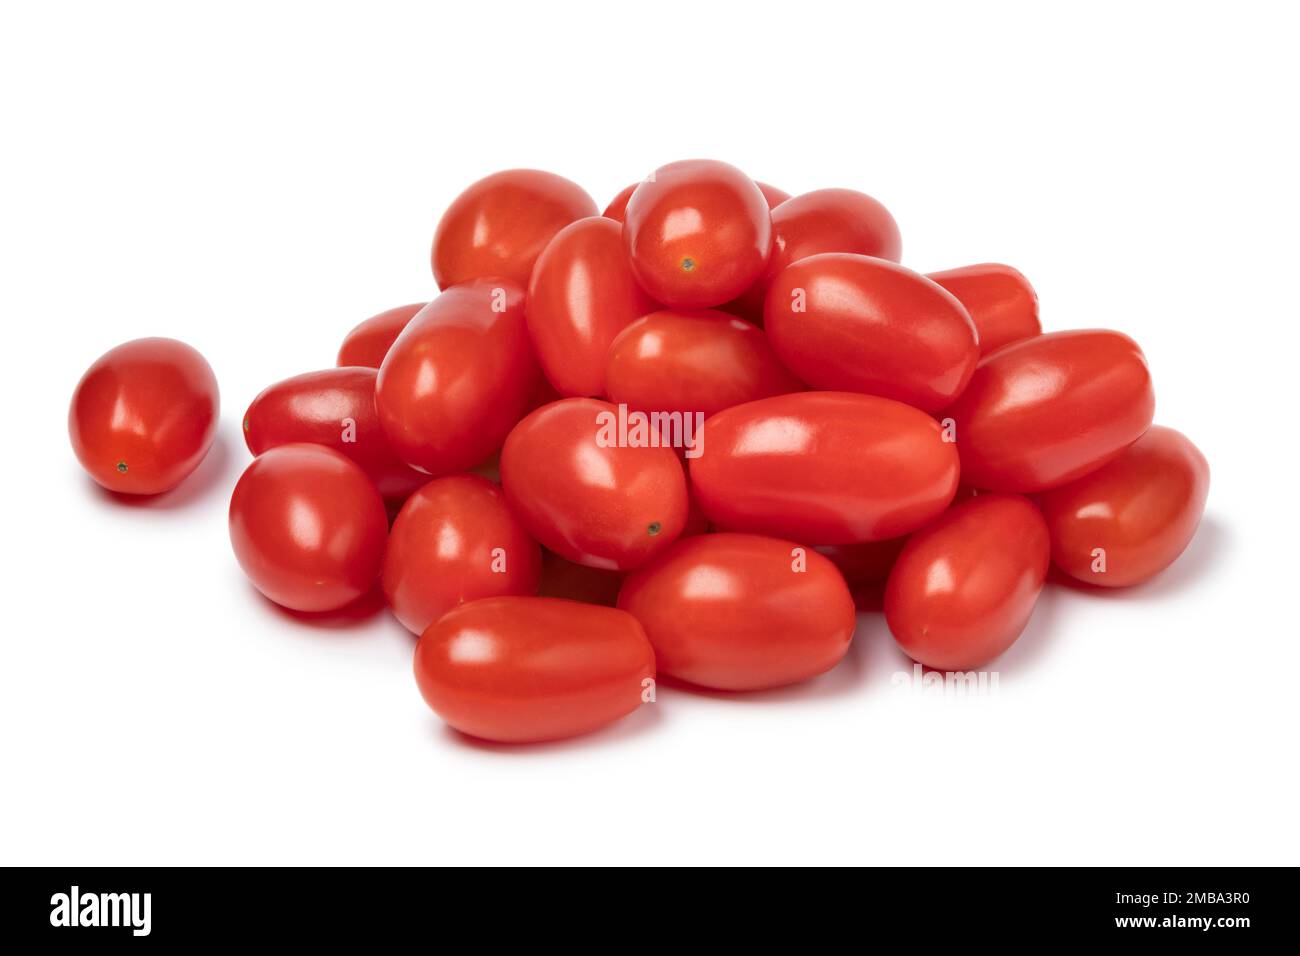 Tas de petites tomates rouges en collation fraîches isolées sur fond blanc Banque D'Images